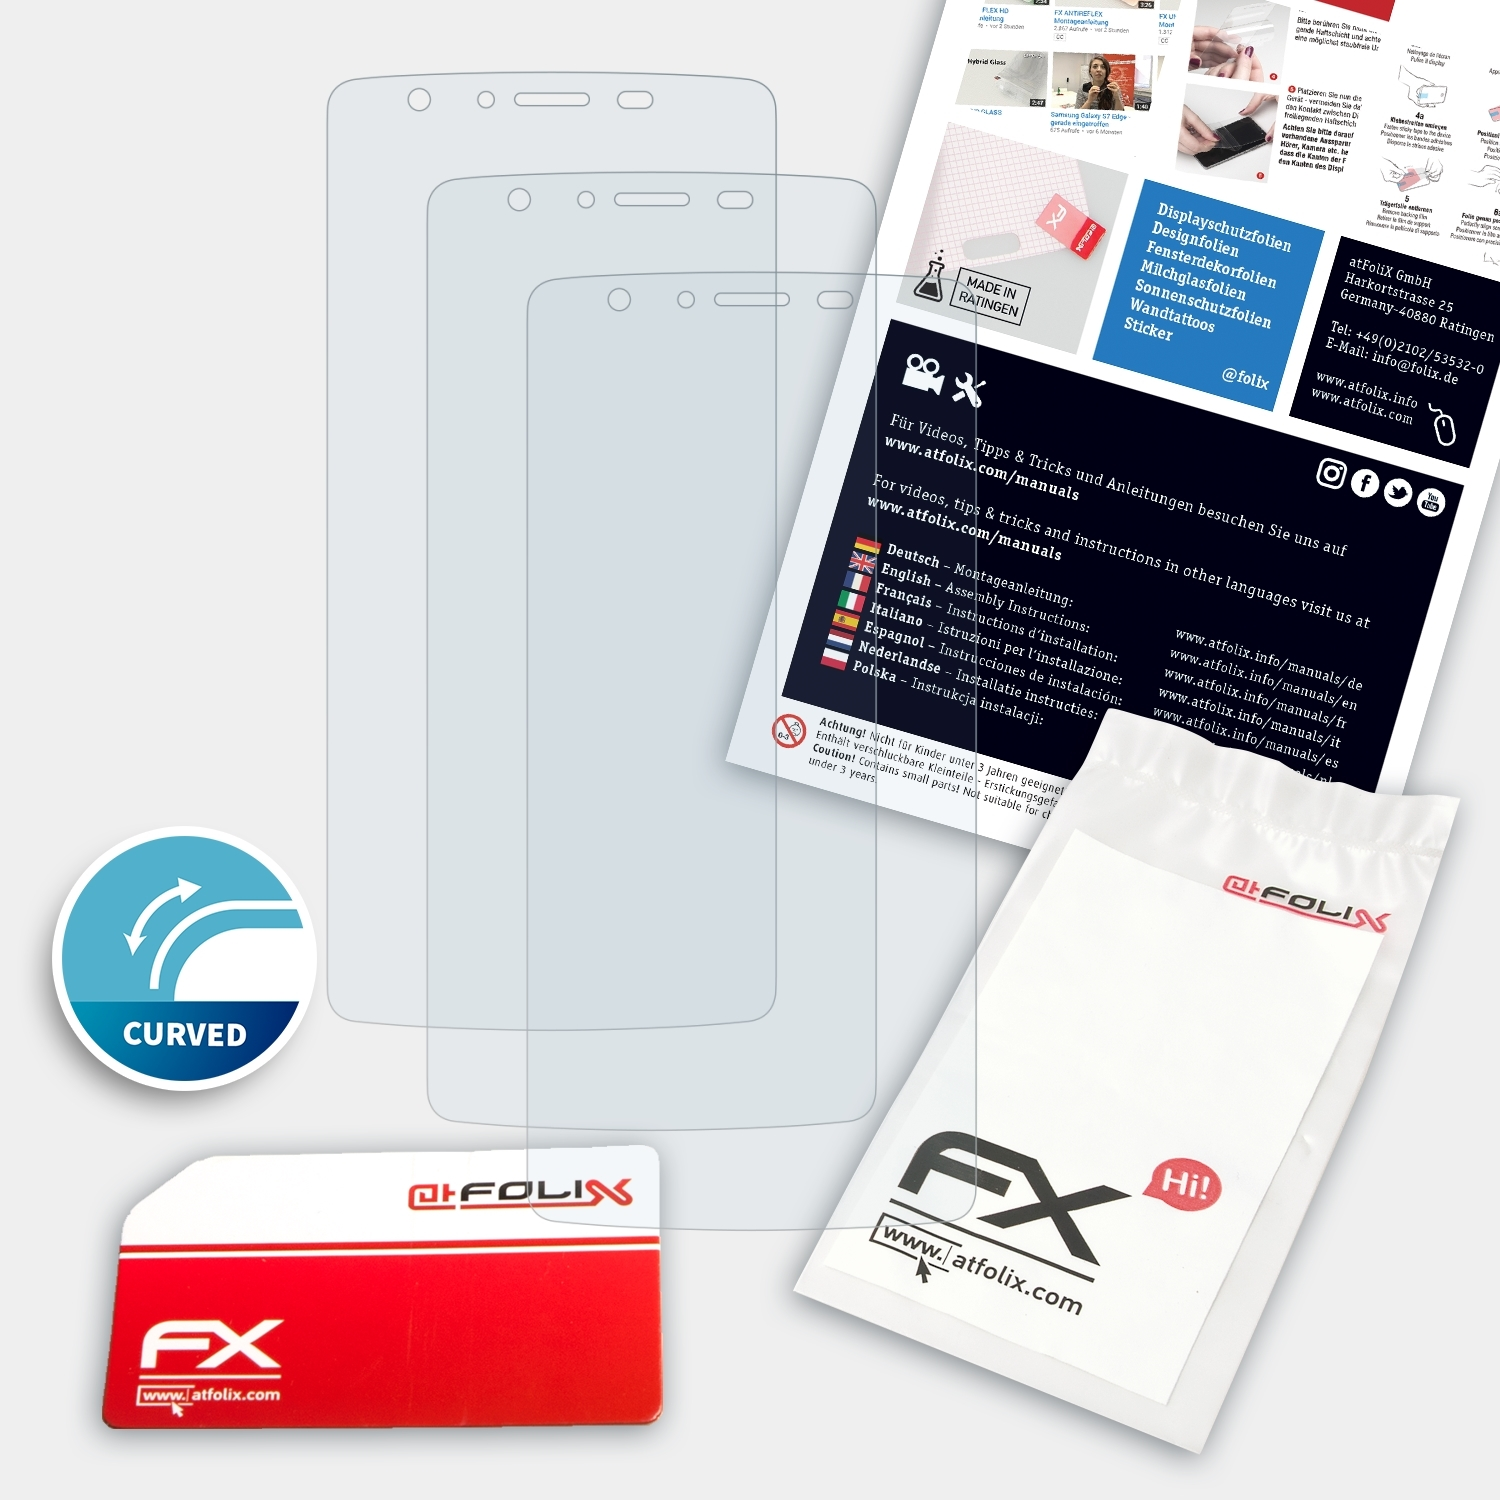 ATFOLIX 3x FX-ActiFleX Displayschutz(für Core Fresh Noa 4G)